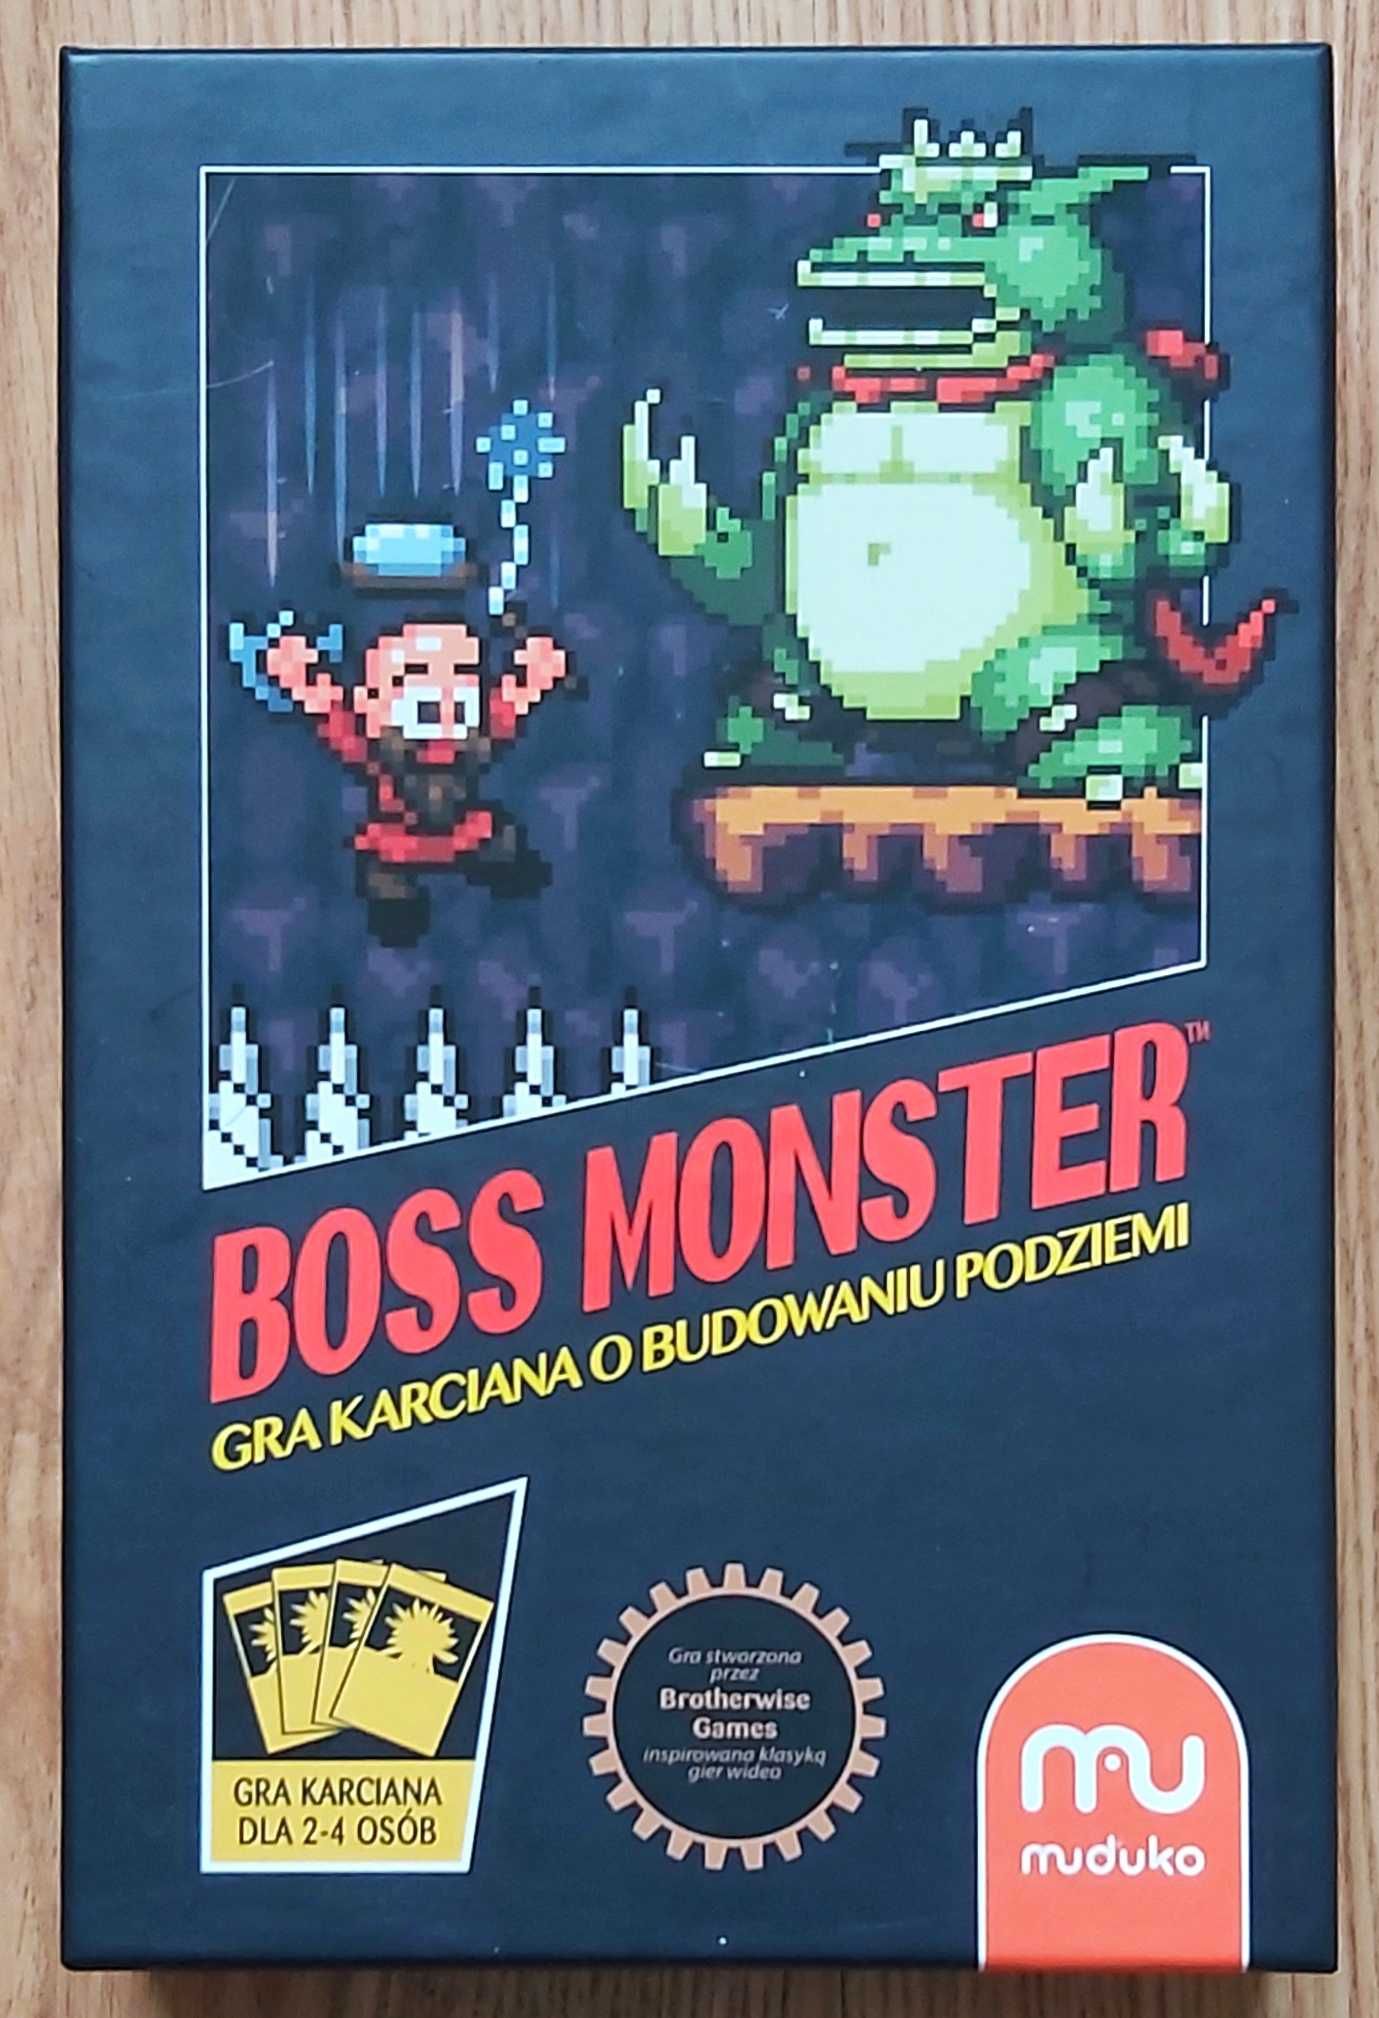 Gra karciana Boss Monster w języku polskim; Muduko